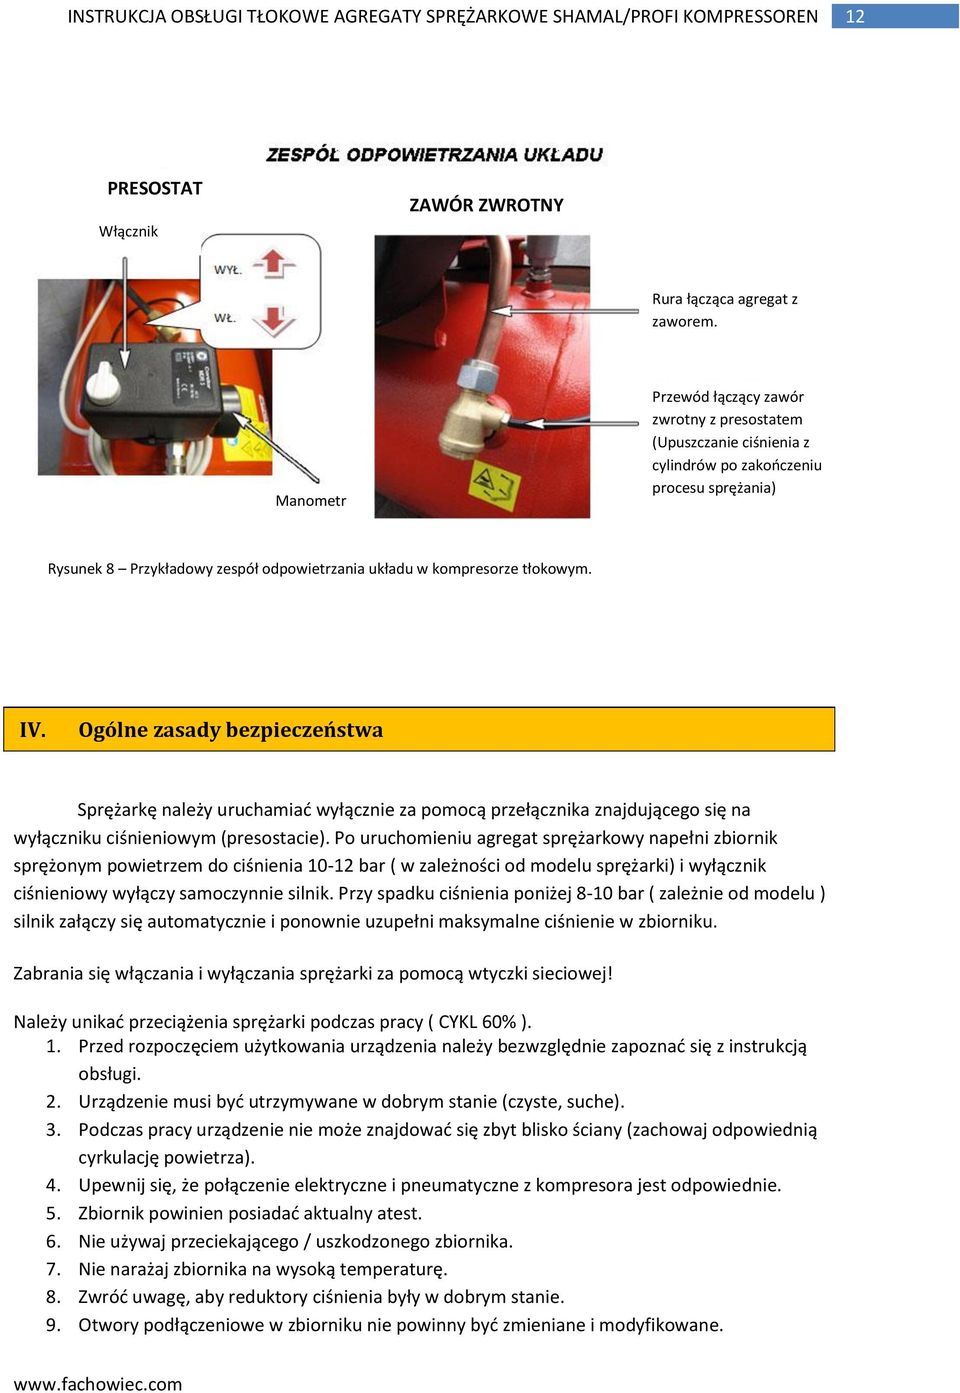 Ogólne zasady bezpieczeństwa Sprężarkę należy uruchamiad wyłącznie za pomocą przełącznika znajdującego się na wyłączniku ciśnieniowym (presostacie).